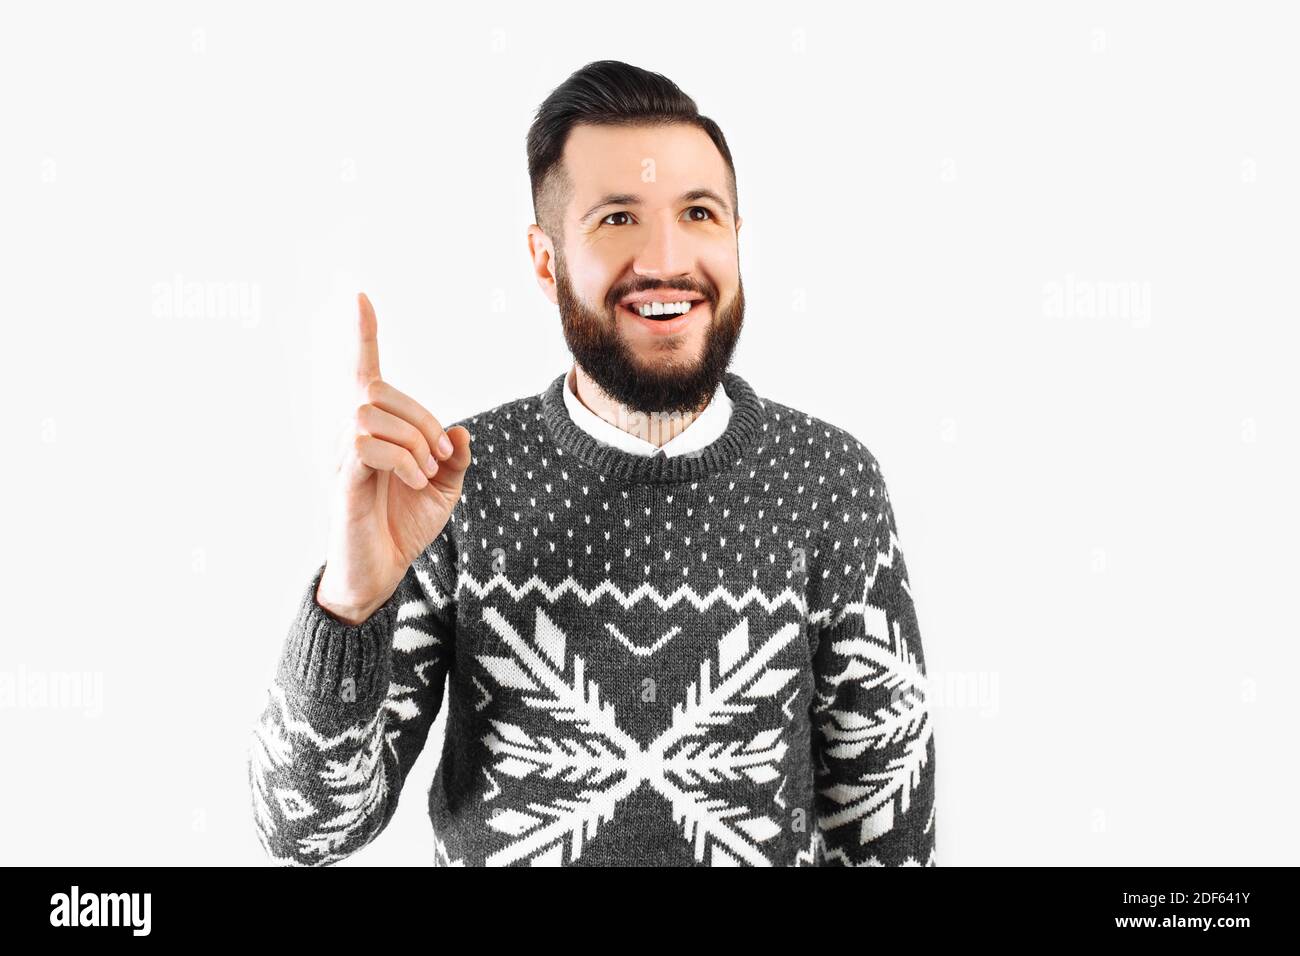 Un'immagine di un uomo sorridente che ha un'idea. Un bel ragazzo bearded in un maglione appena venuto in su con un pensiero grande. Su sfondo bianco Foto Stock